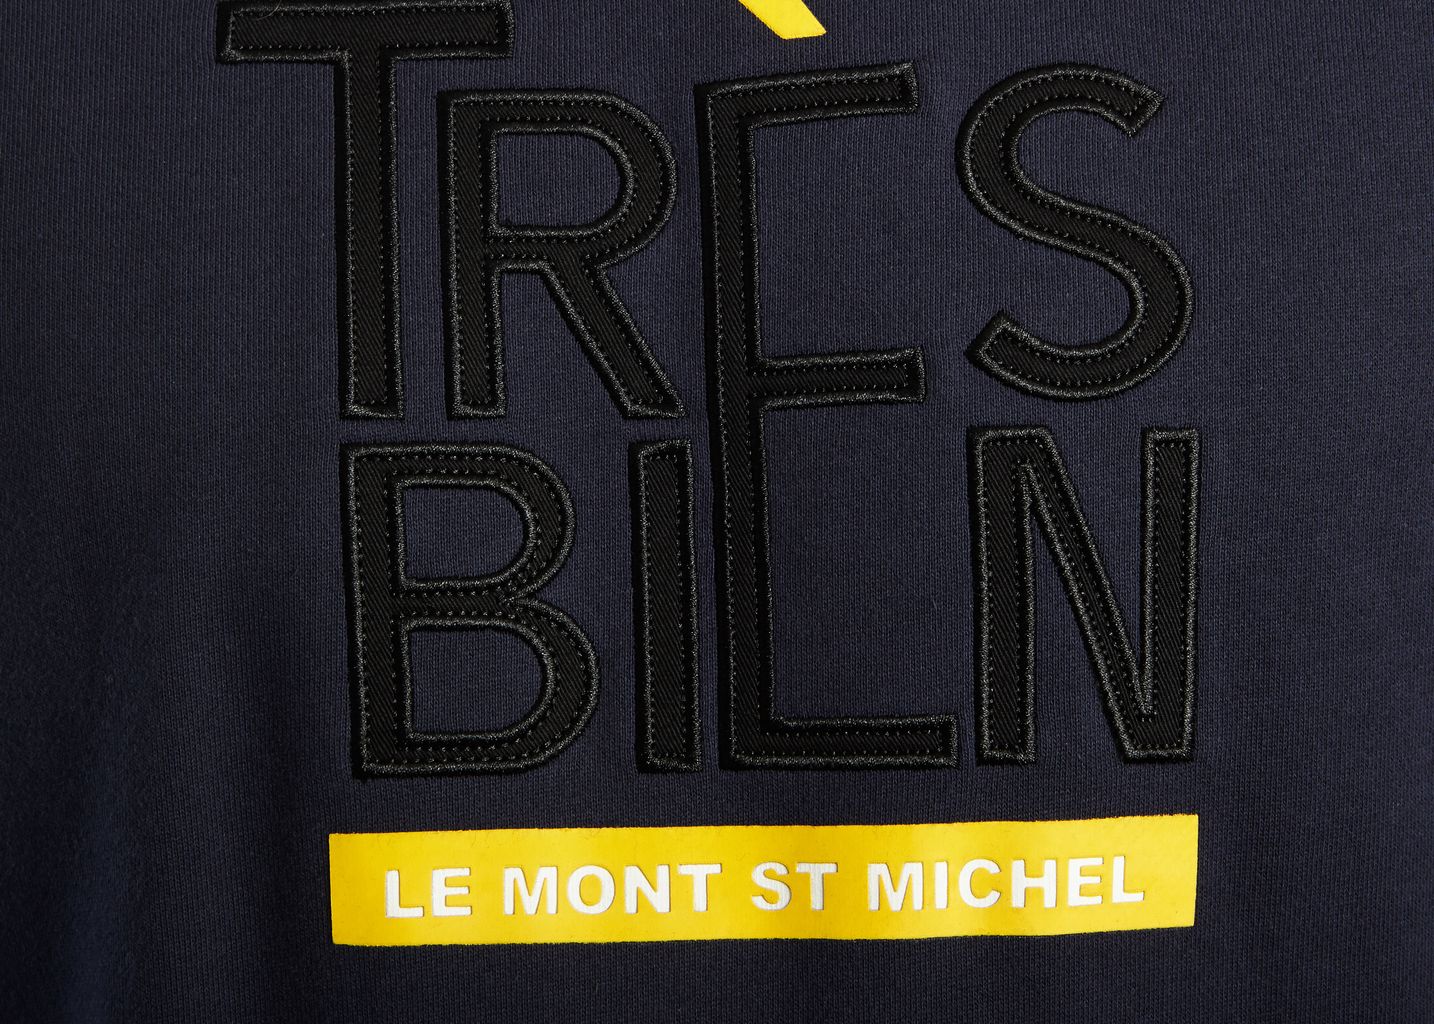 Très Bien Sweatshirt - Le Mont St Michel